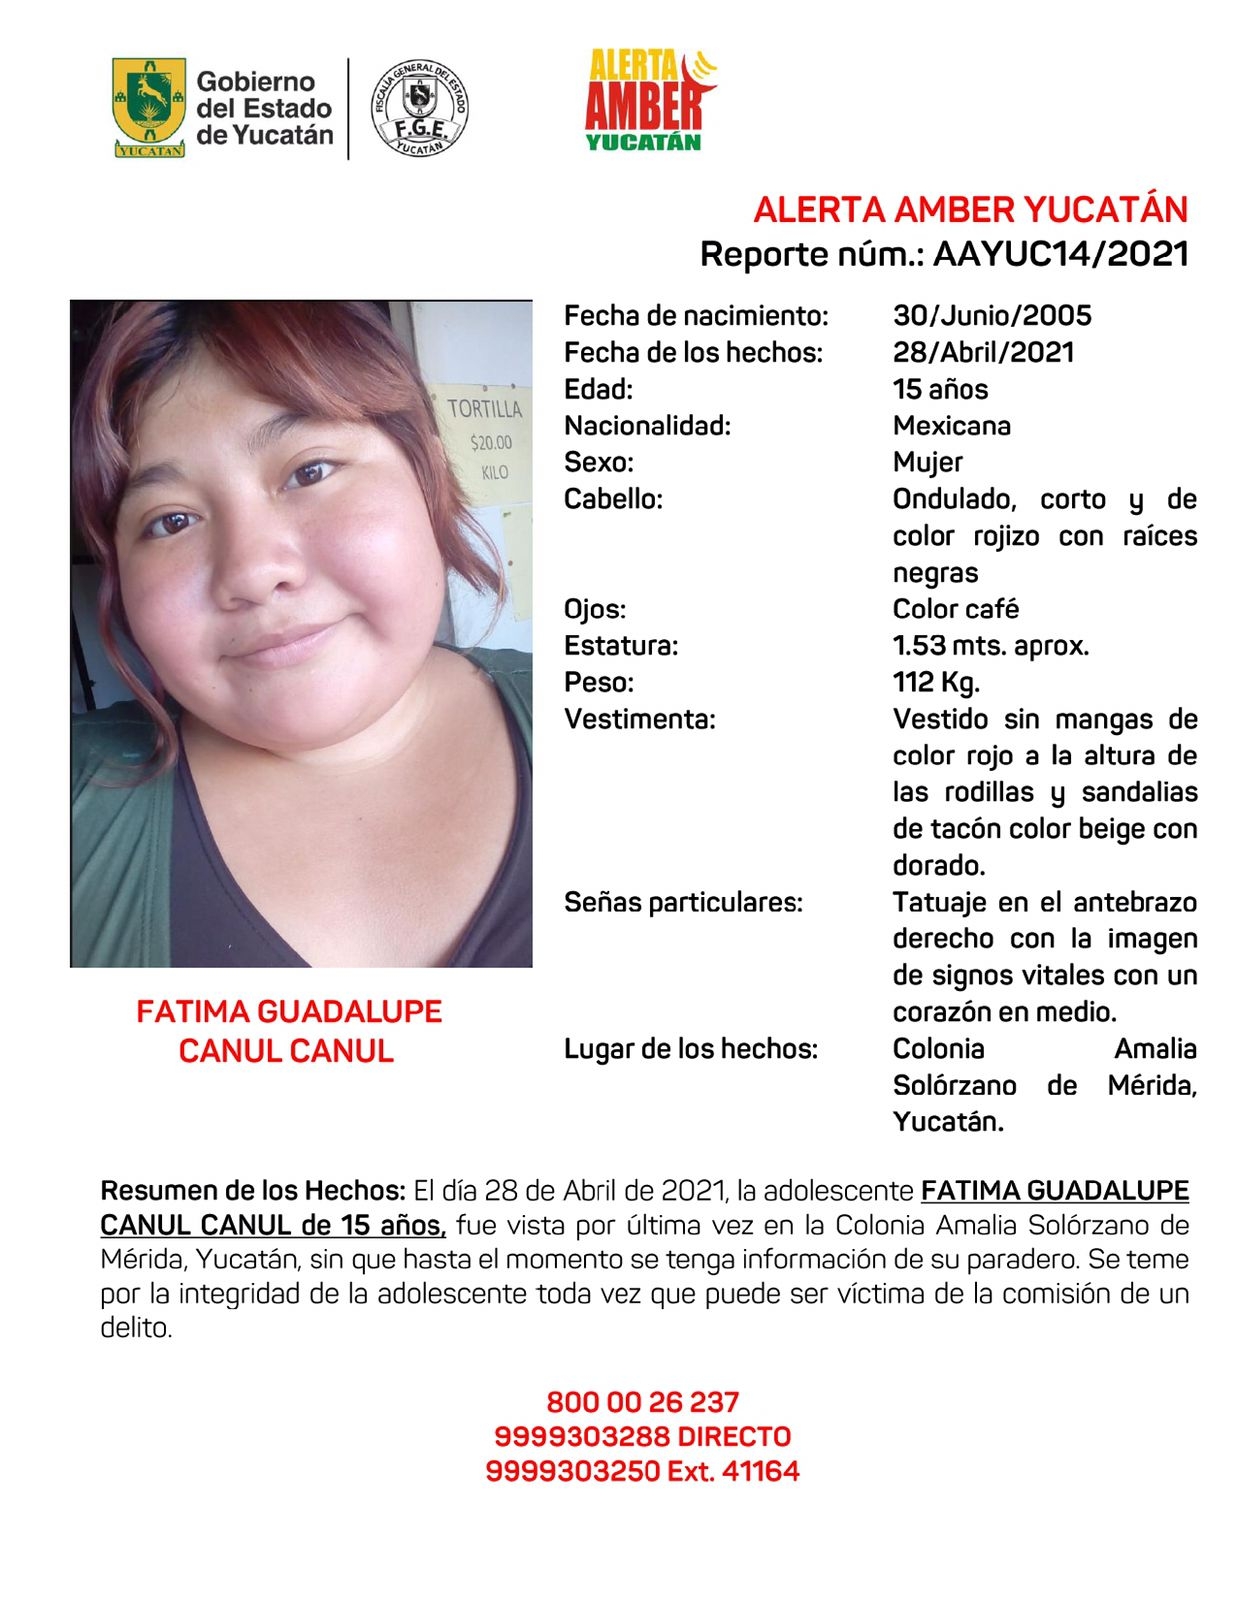 Desaparece una joven de 15 años en Mérida; activan Alerta Amber